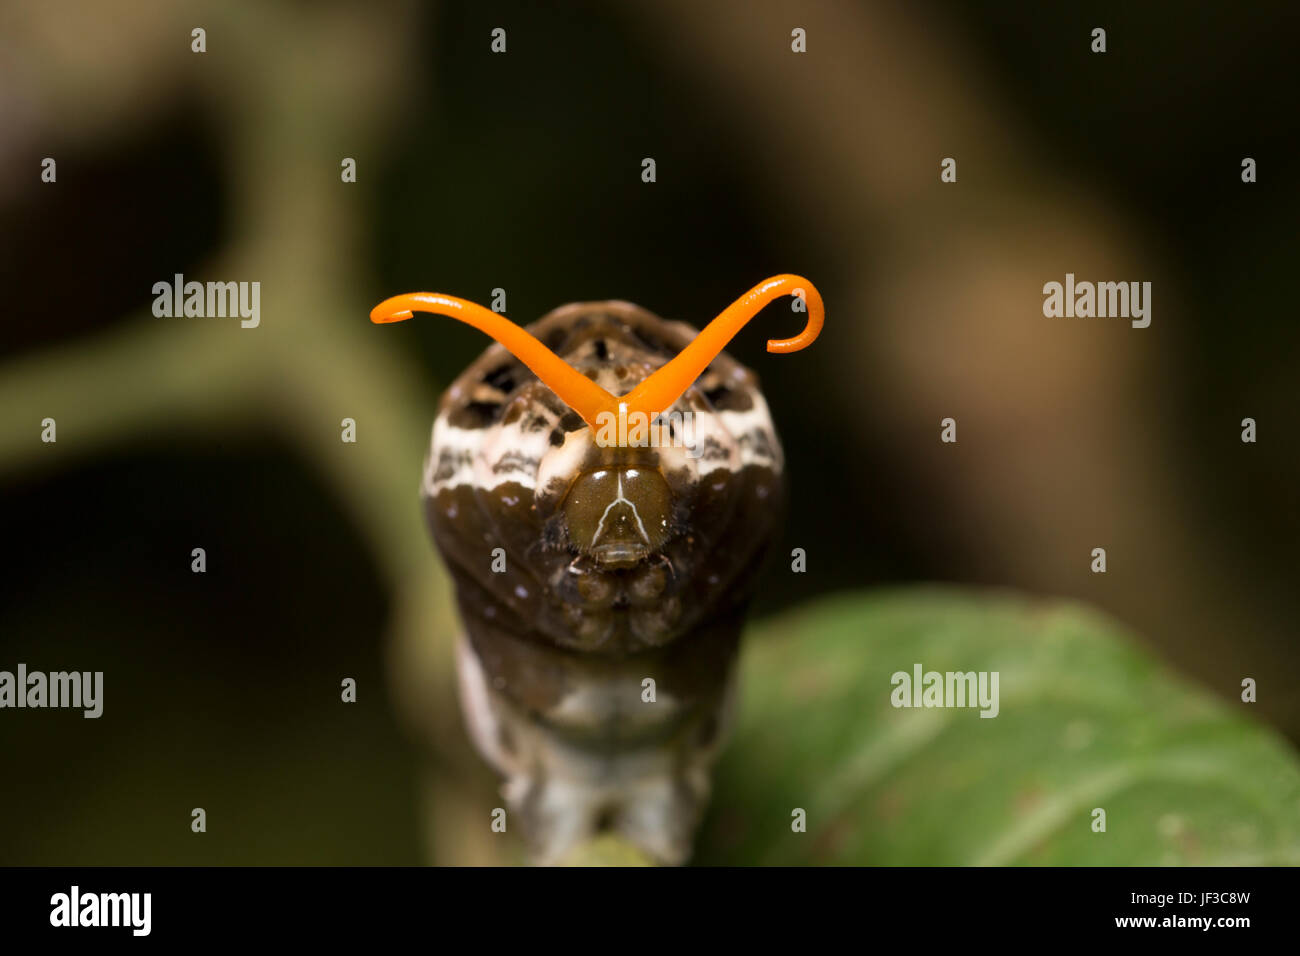 König Schwalbenschwanz, Papilio Thoas, Raupe oder Larve, erweitert seine Osmaterium um eine Schlange doppelzüngig zu imitieren. La Selva, Costa Rica Stockfoto